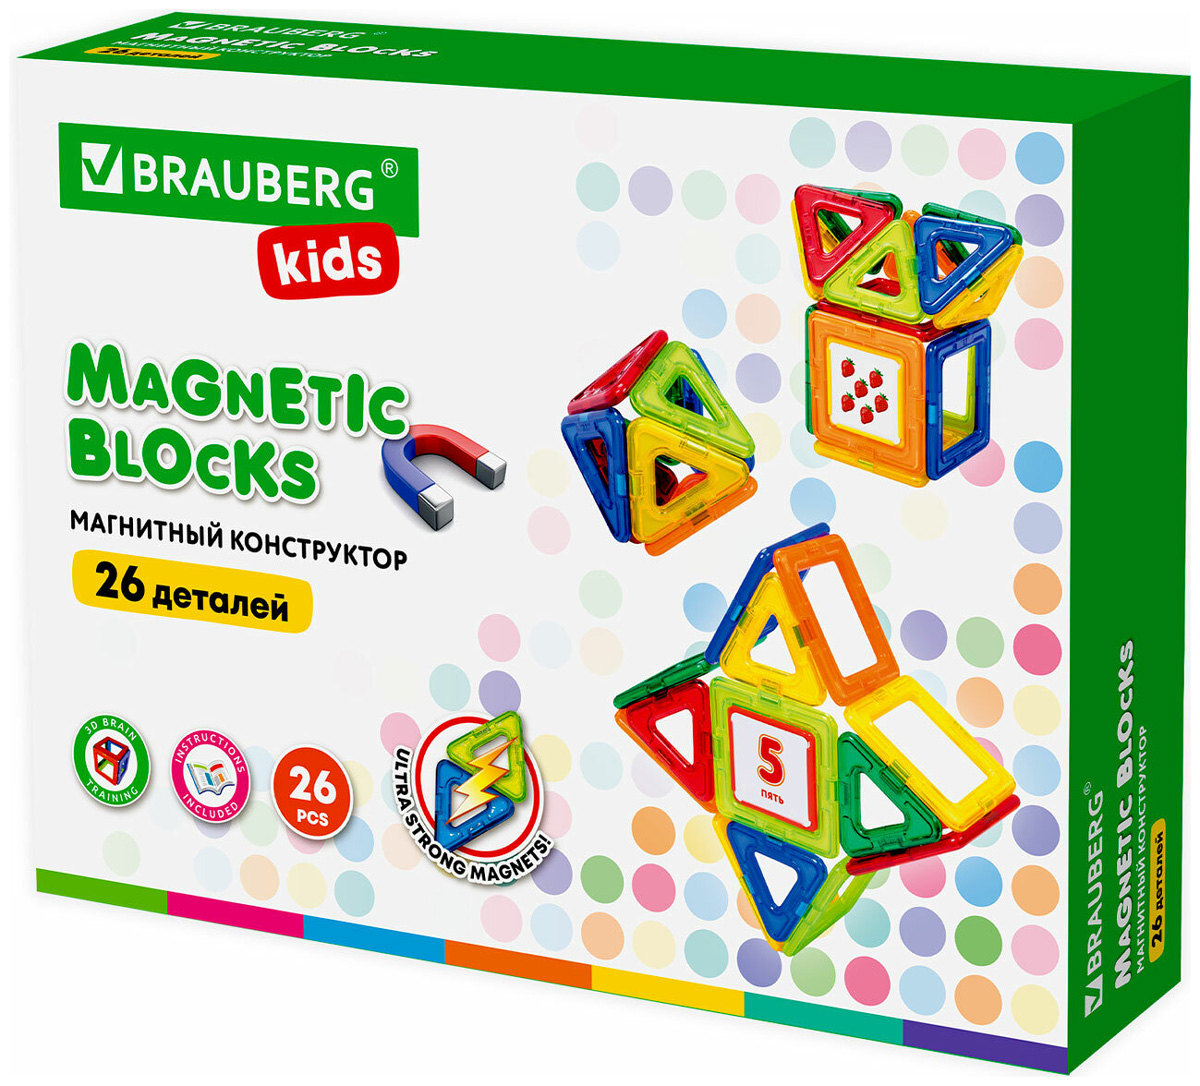 Конструктор магнитный Brauberg KIDS MAGNETIC BLOCKS-26 663844 конструктор магнитный brauberg kids big magnetic blocks 42 663846